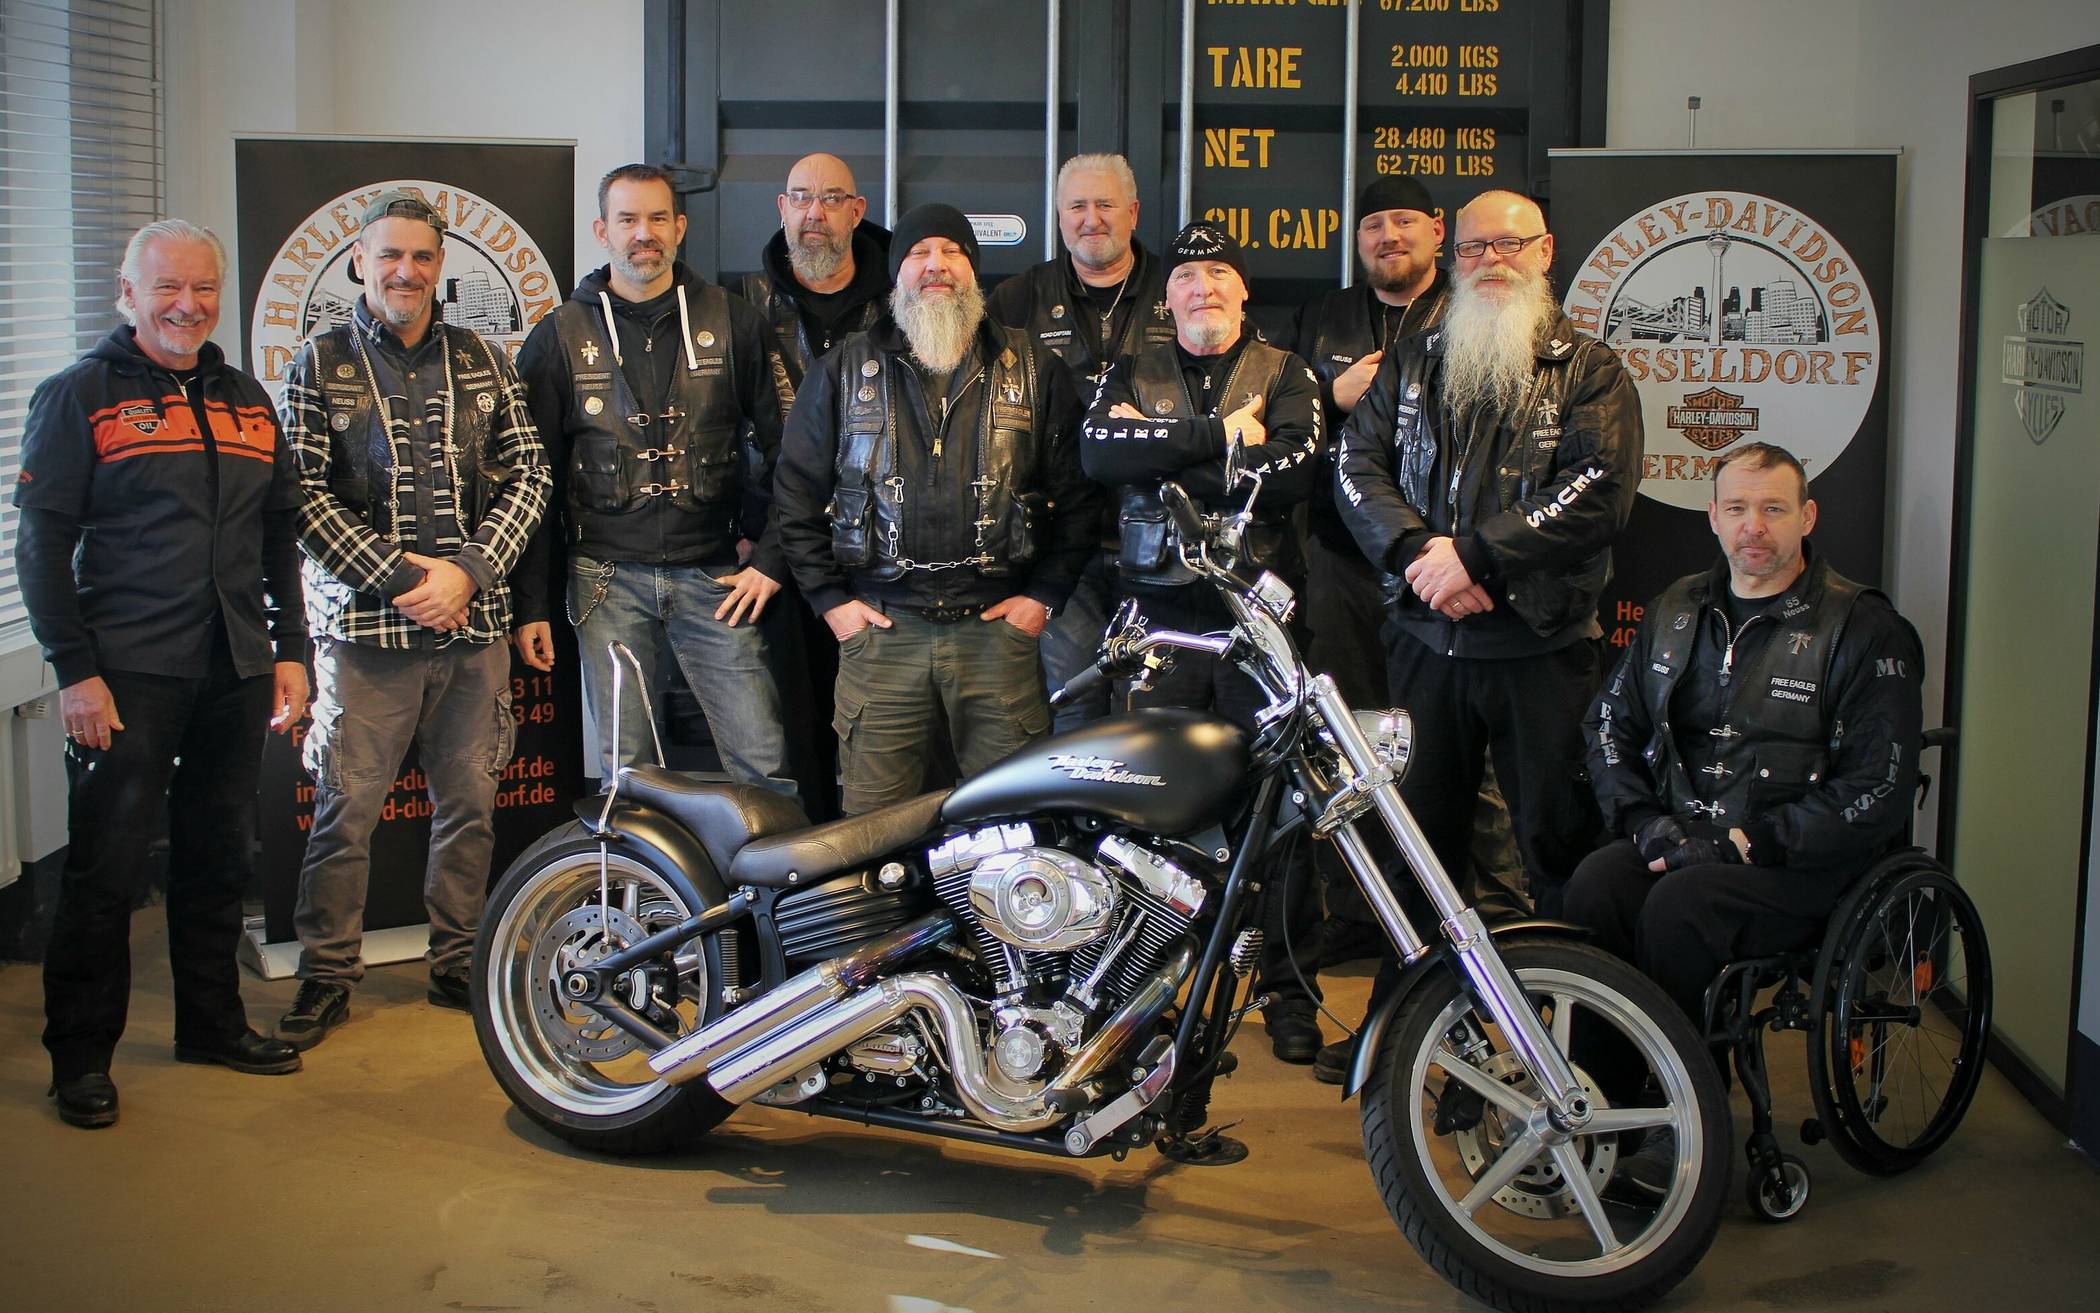  Diese Harley Davidson wird für den guten Zweck versteigert. Die „Free Eagles“ engagieren sich unter dem Motto „Rocker fürs Ahrtal“. 